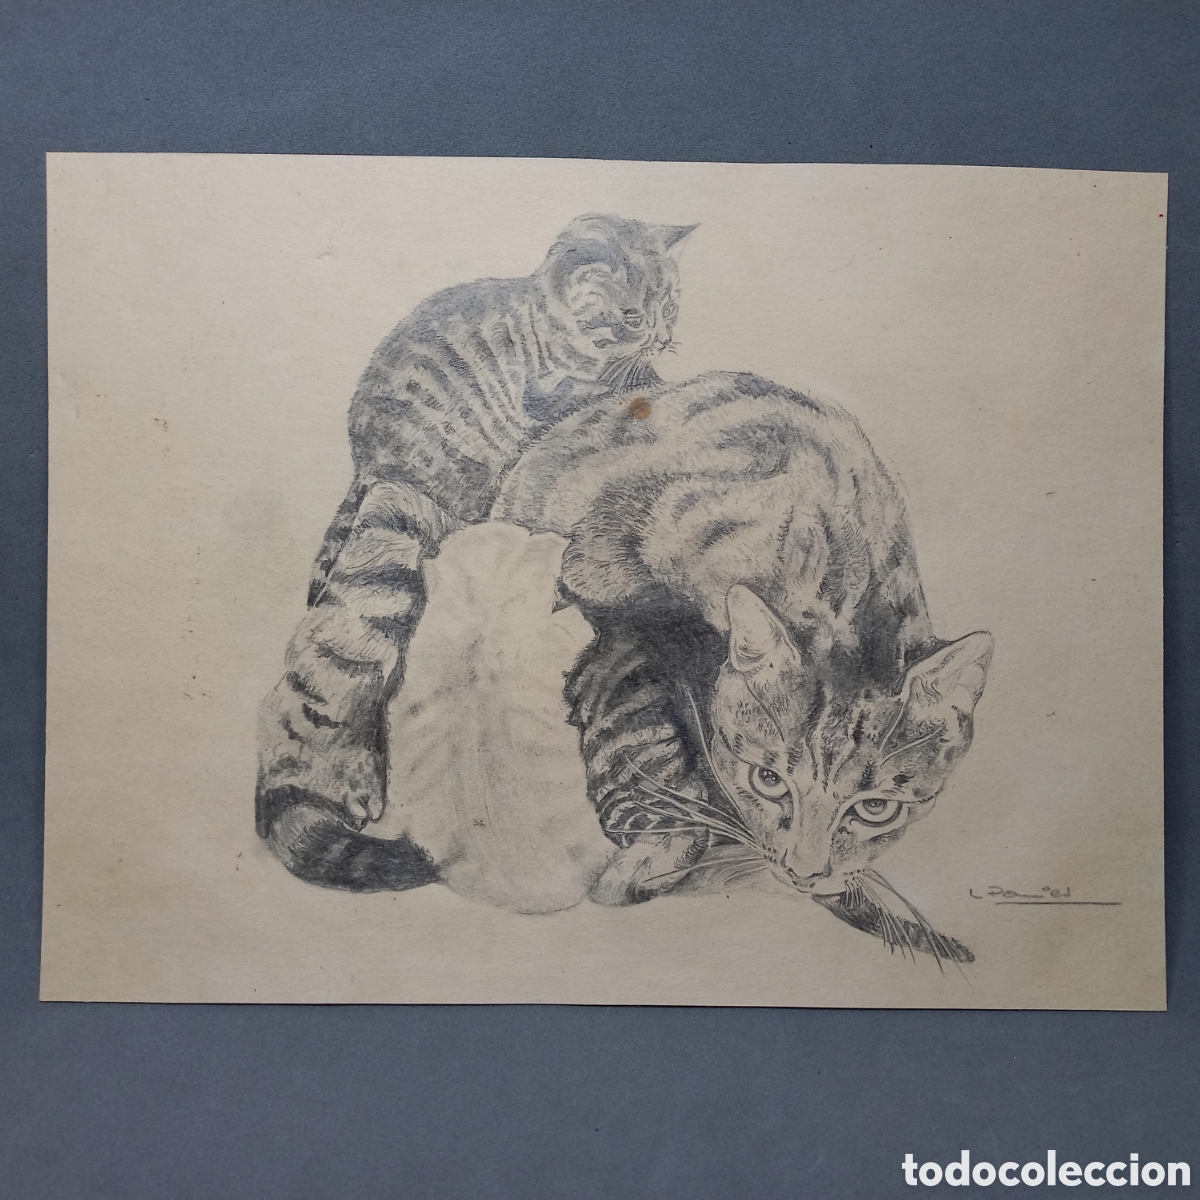 gatos. gata amamantando a la camada. dibujo a c - Acquista Disegni  contemporanei del XX secolo su todocoleccion